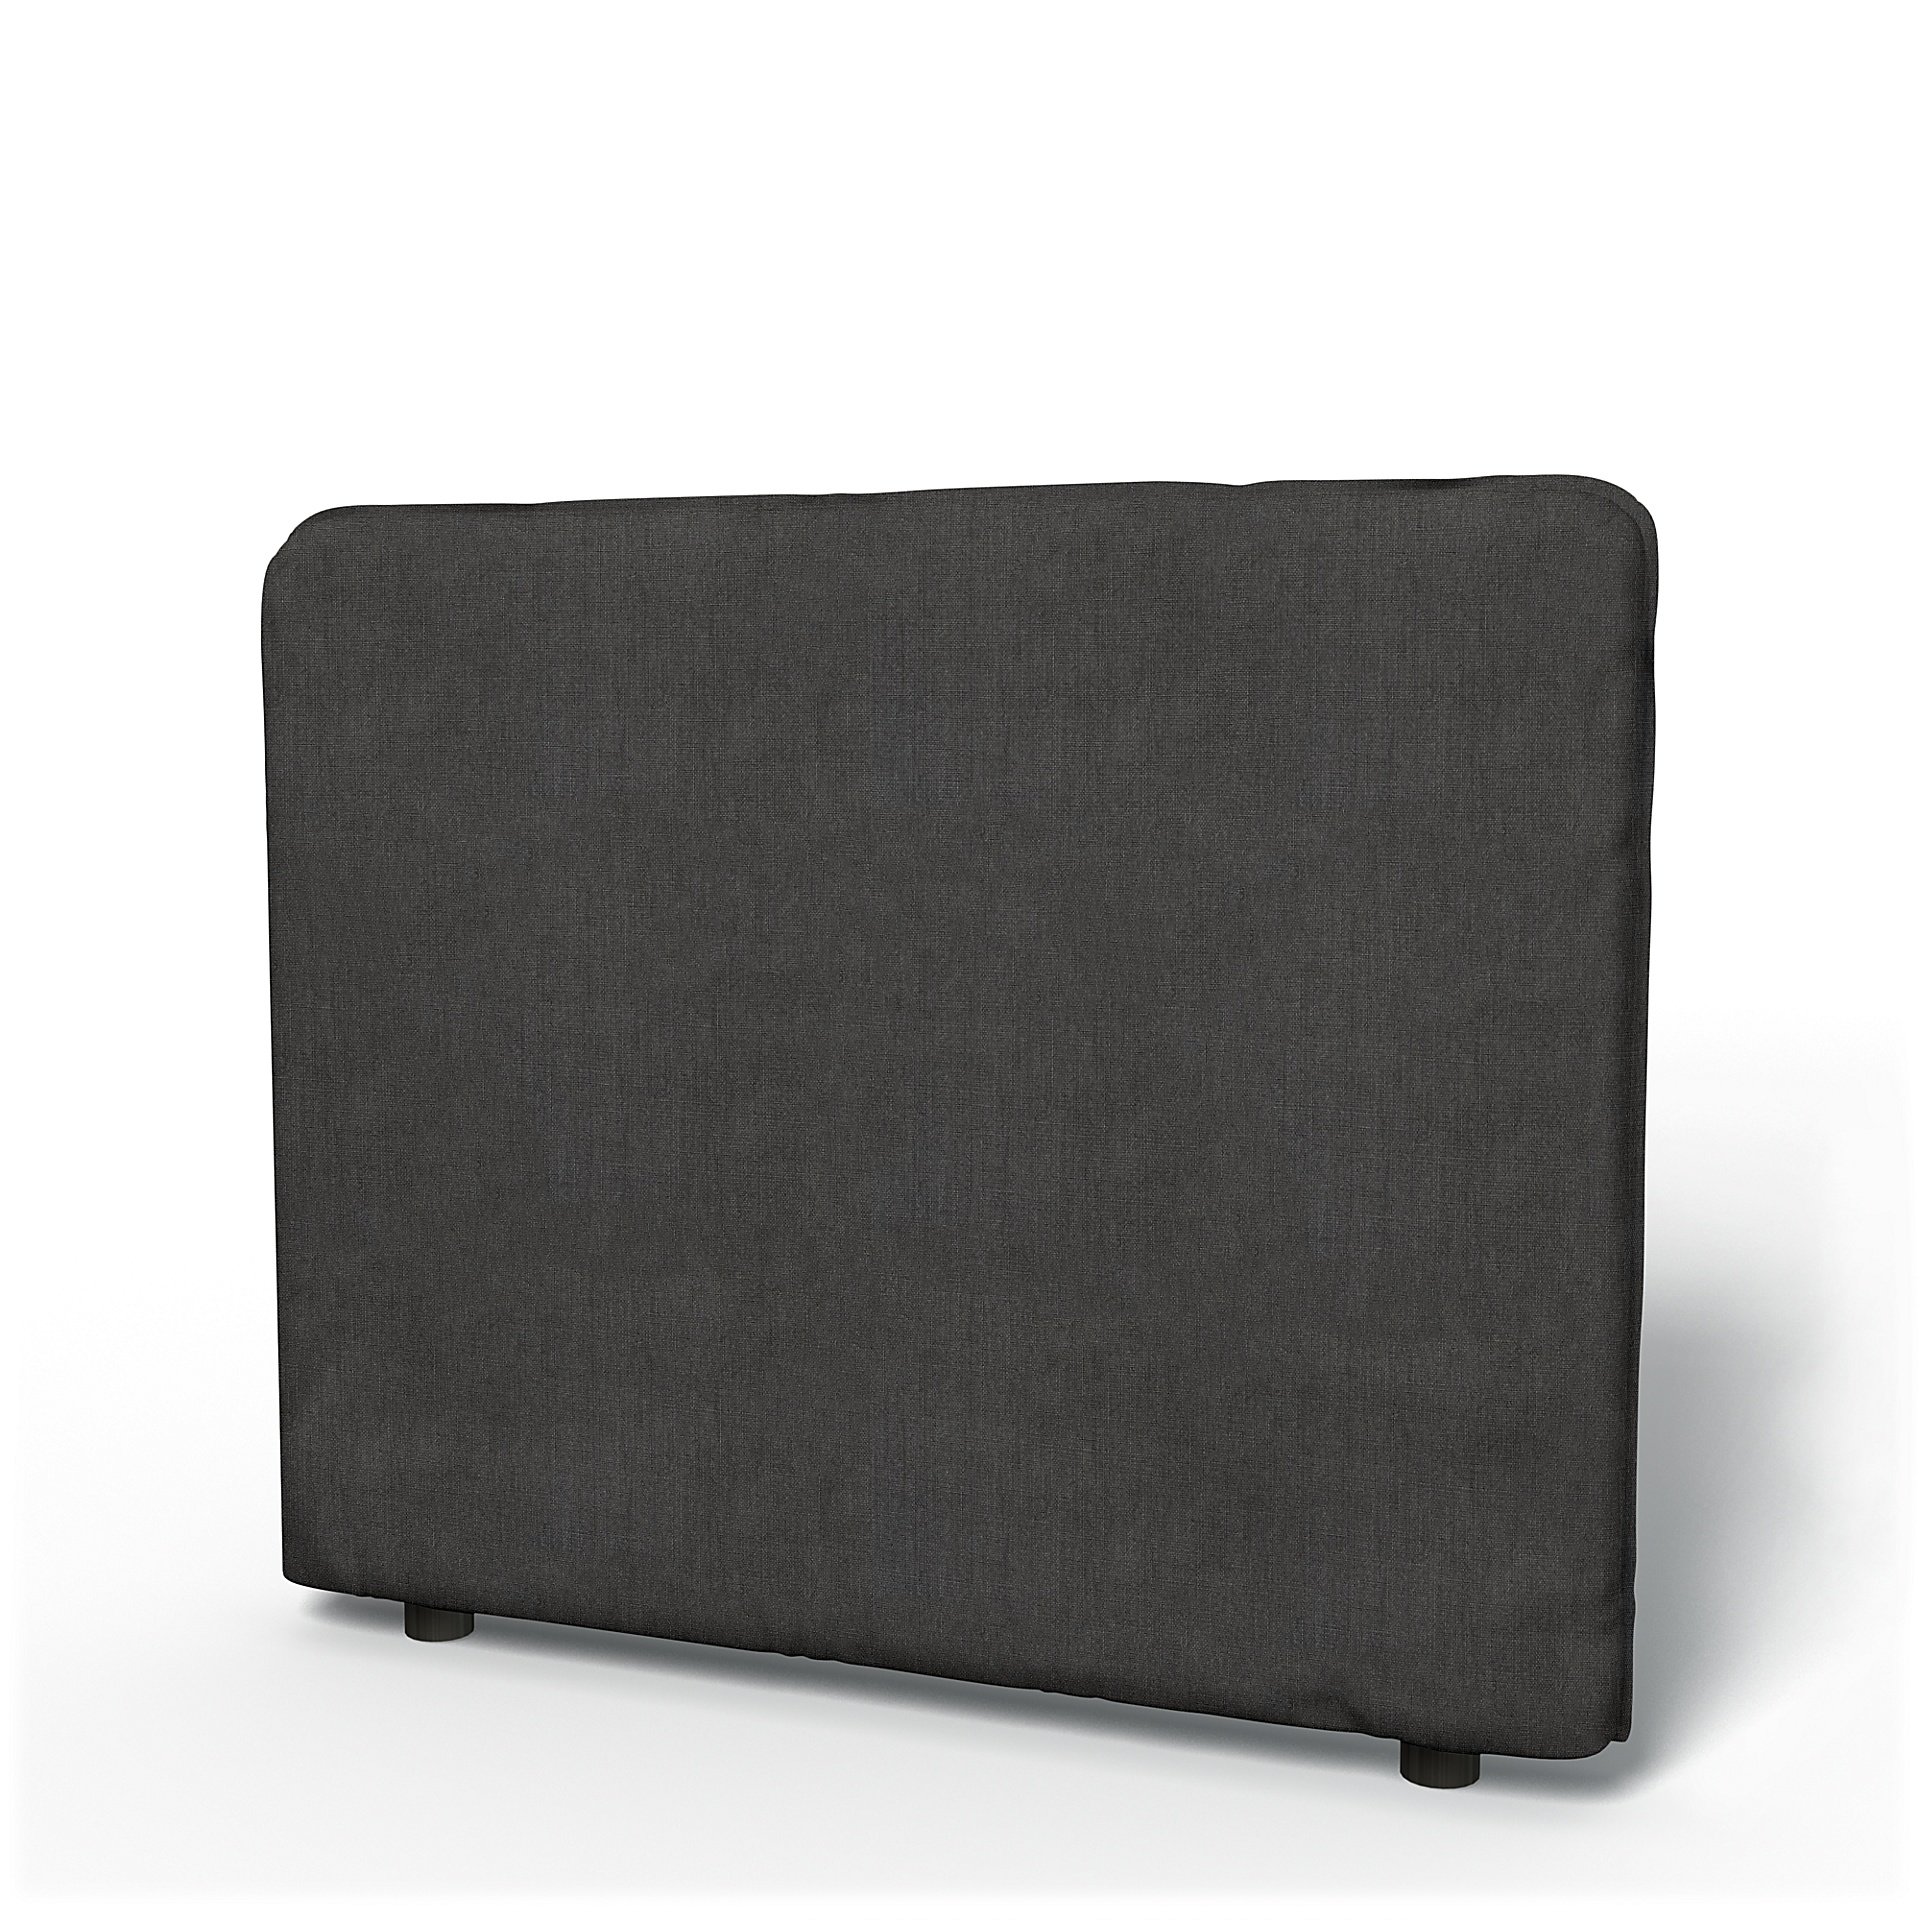 IKEA - Vallentuna Low Backrest Cover 100x80cm 39x32in, Espresso, Linen - Bemz